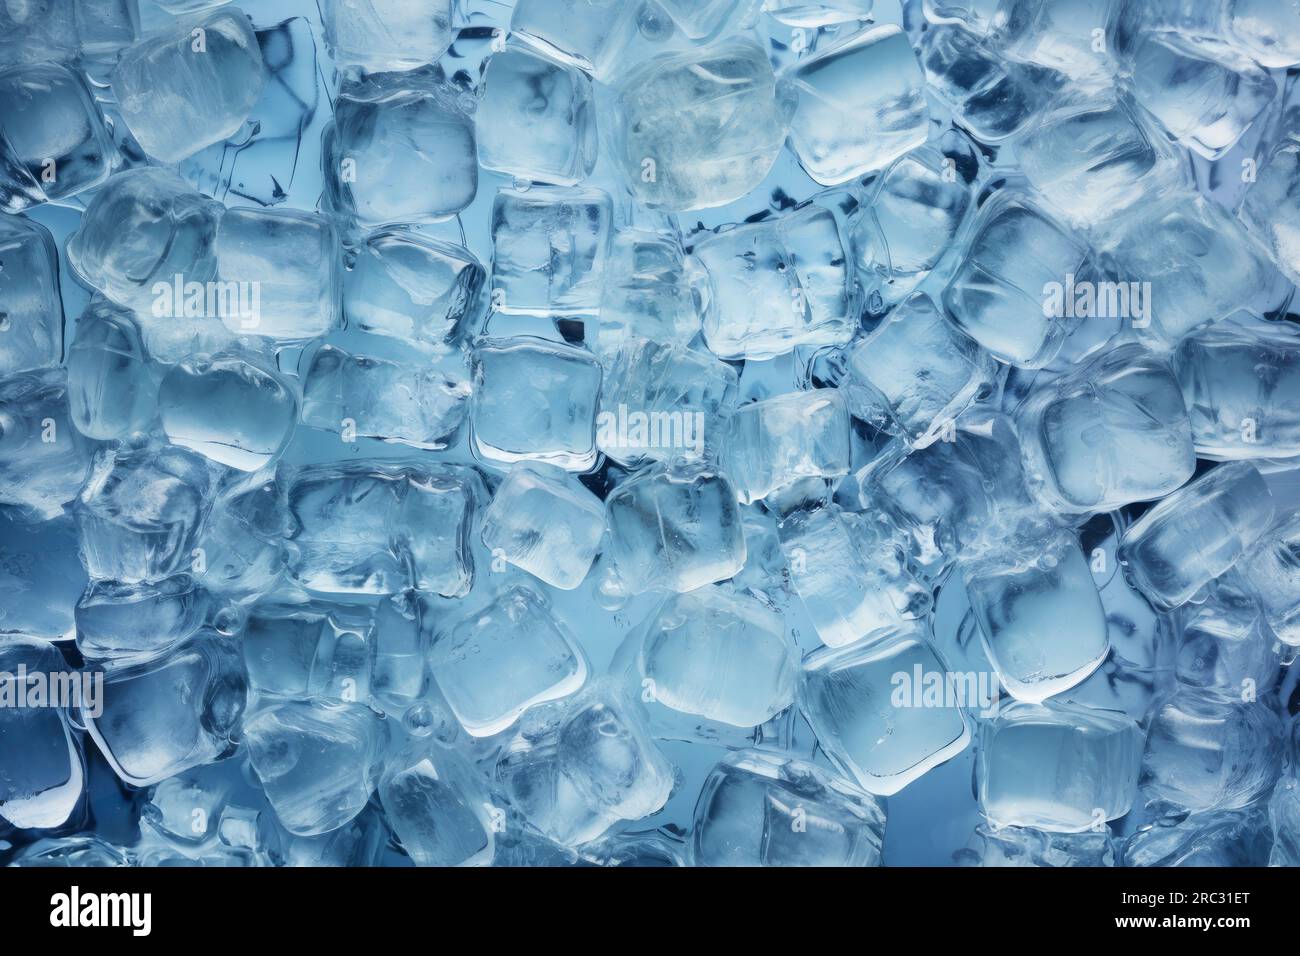 Frische Eiswürfel zum Kühlen der Getränke. Gefrorenes reines Wasser. Klarer Eiswürfelhintergrund. Ansicht der Eisstücke auf dem Tisch von oben. Hellblaue Farbe. Makroaufnahme Stockfoto